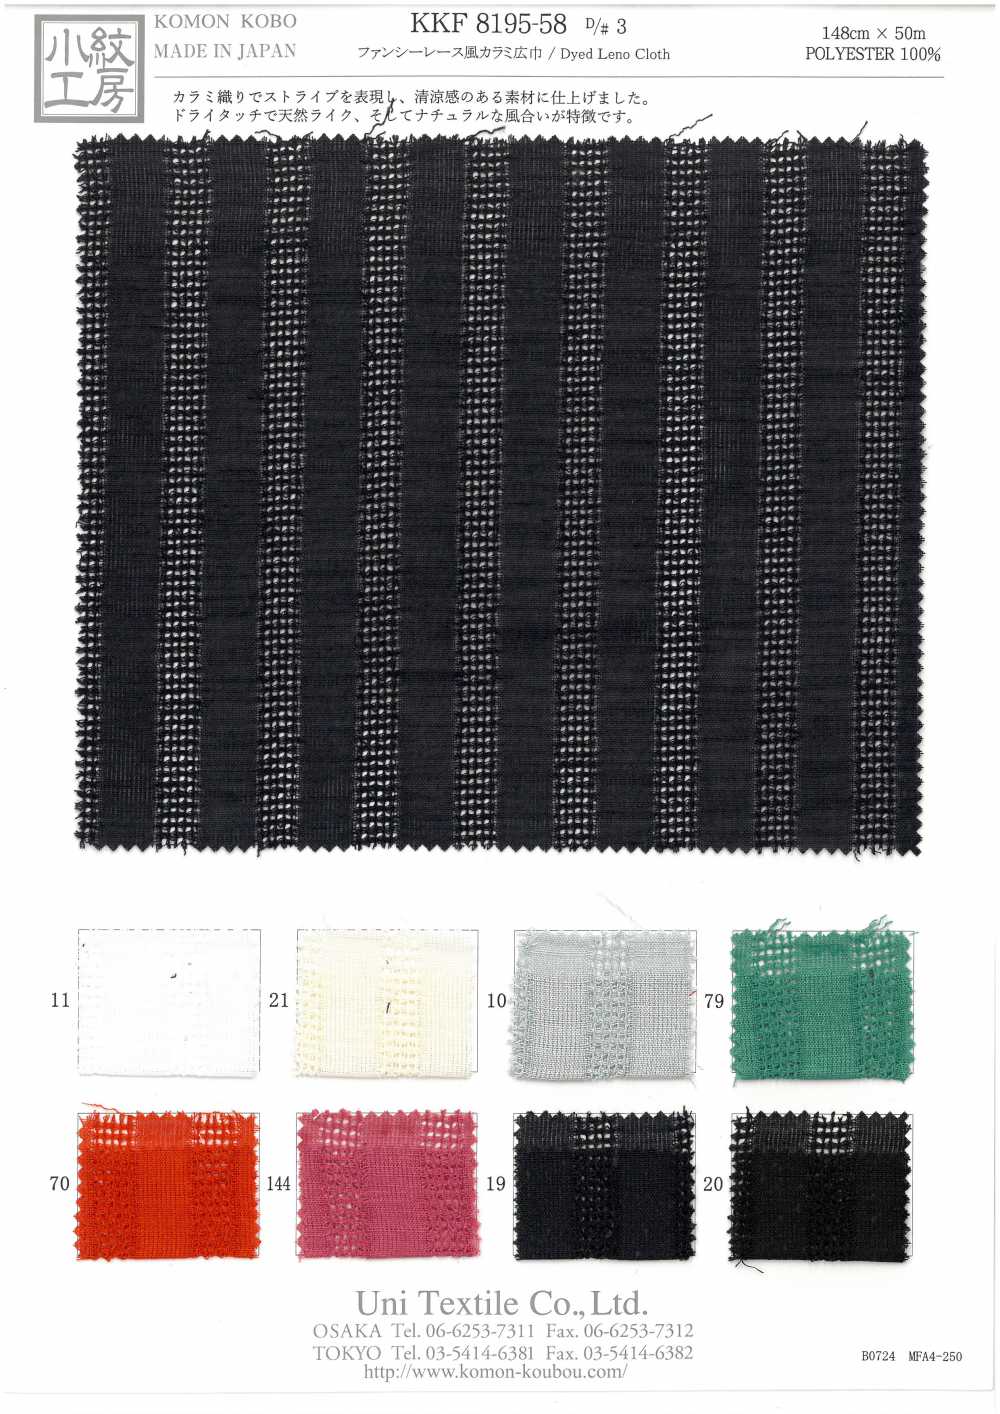 KKF8195-58-D/3 Fancy Lace Style Leno Weave[Textile / Fabric] Uni